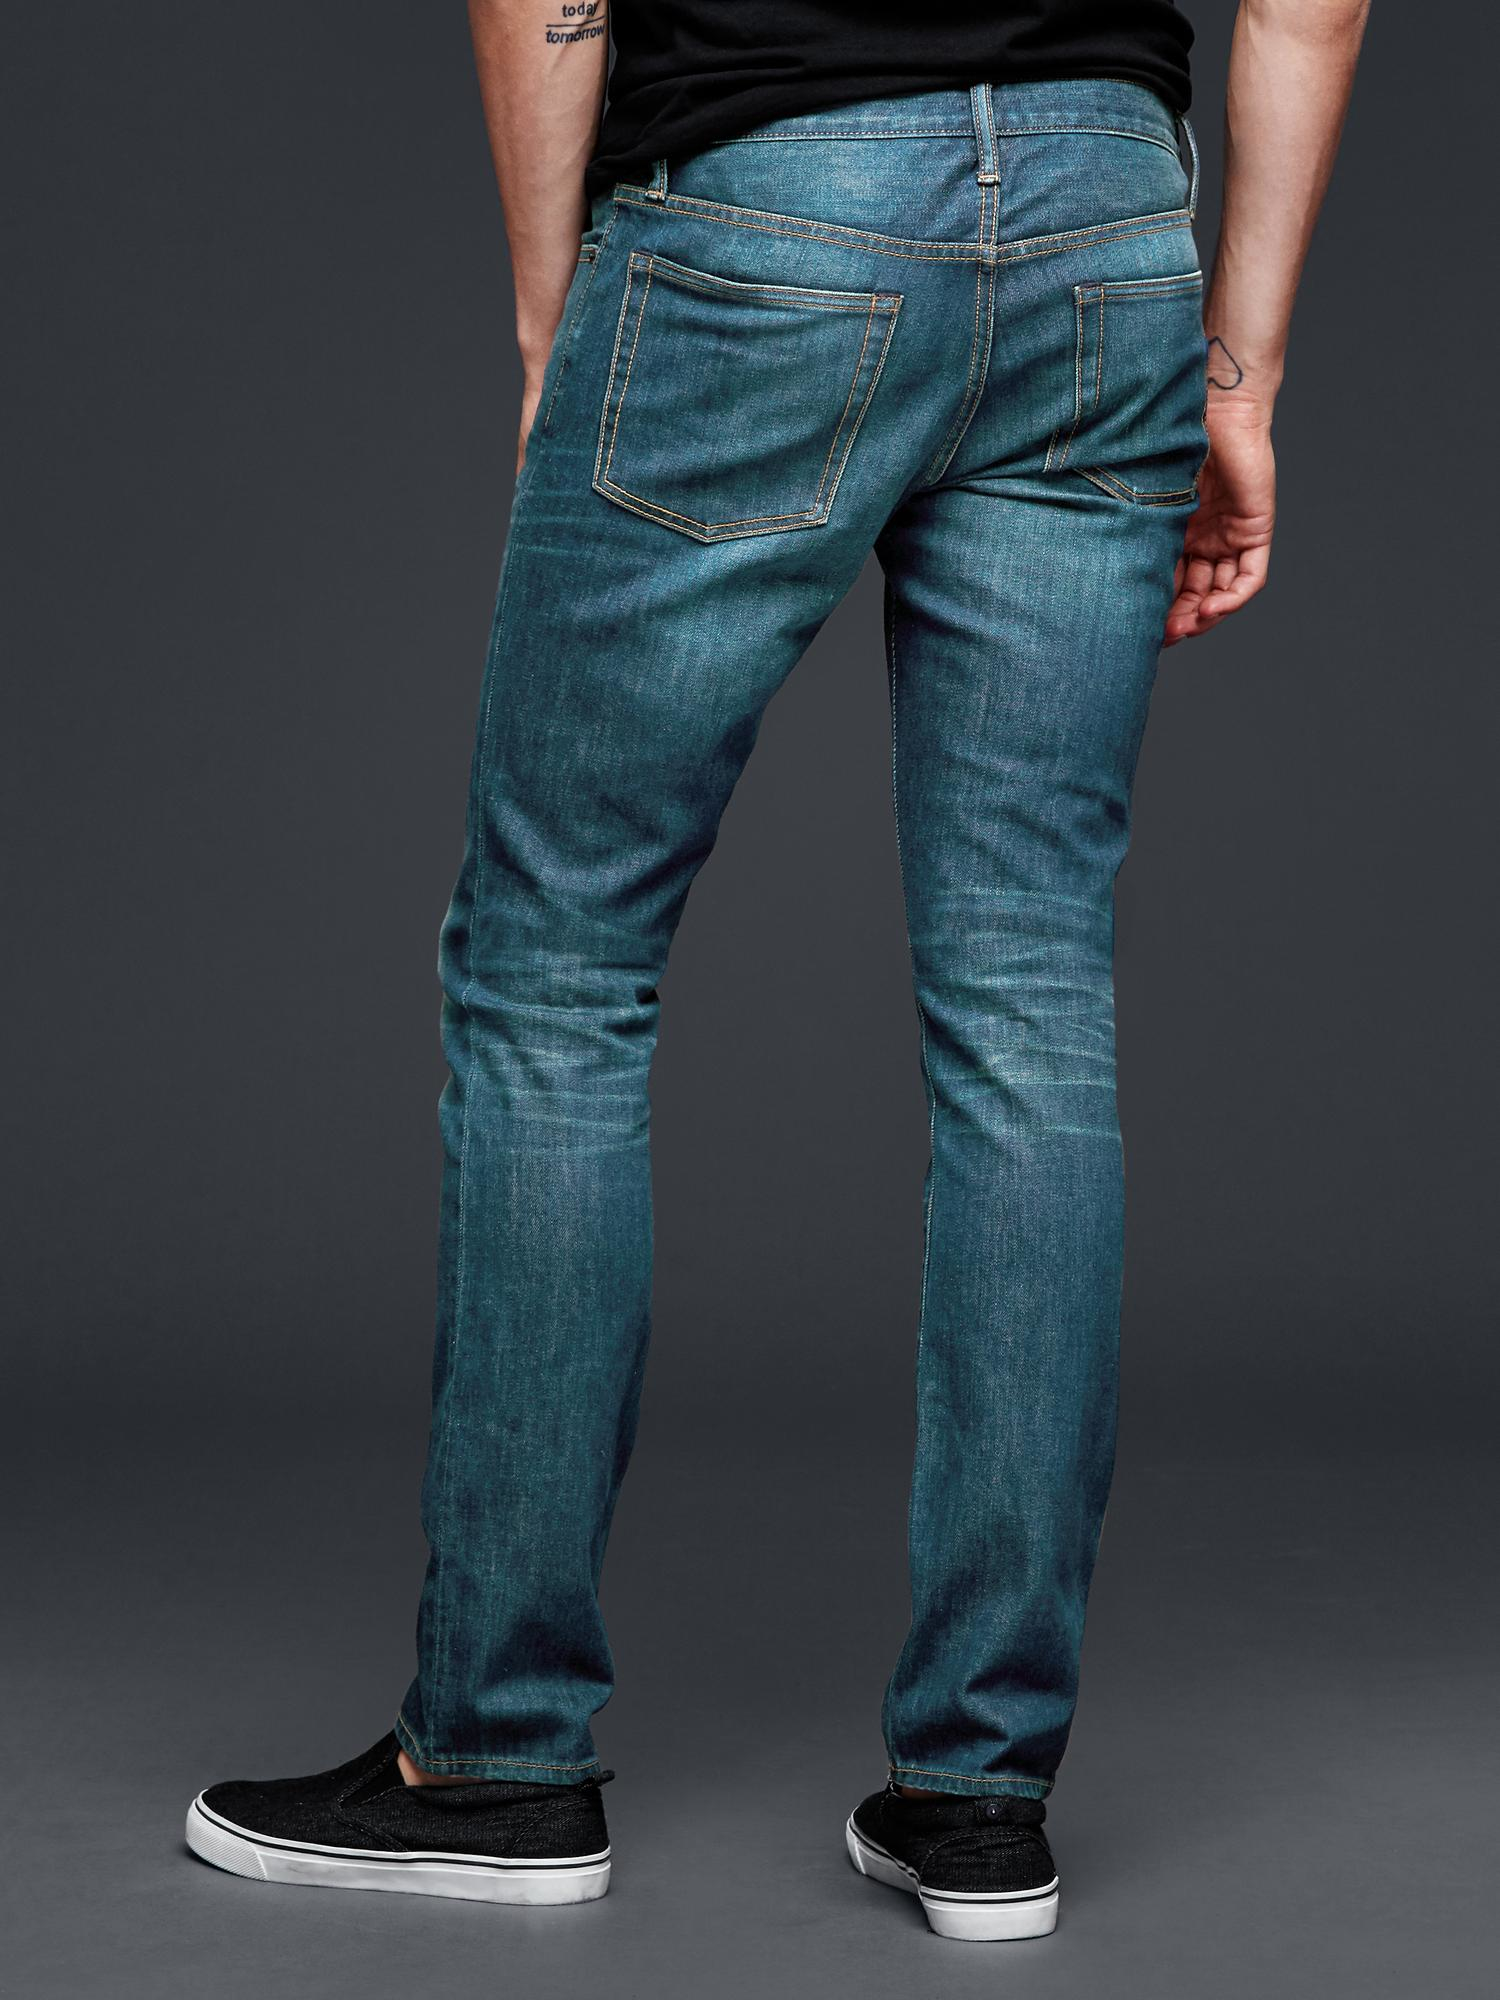 Lyst - Gap 1969 Skinny Fit Jeans (vintage Green Wash) in Blue for Men